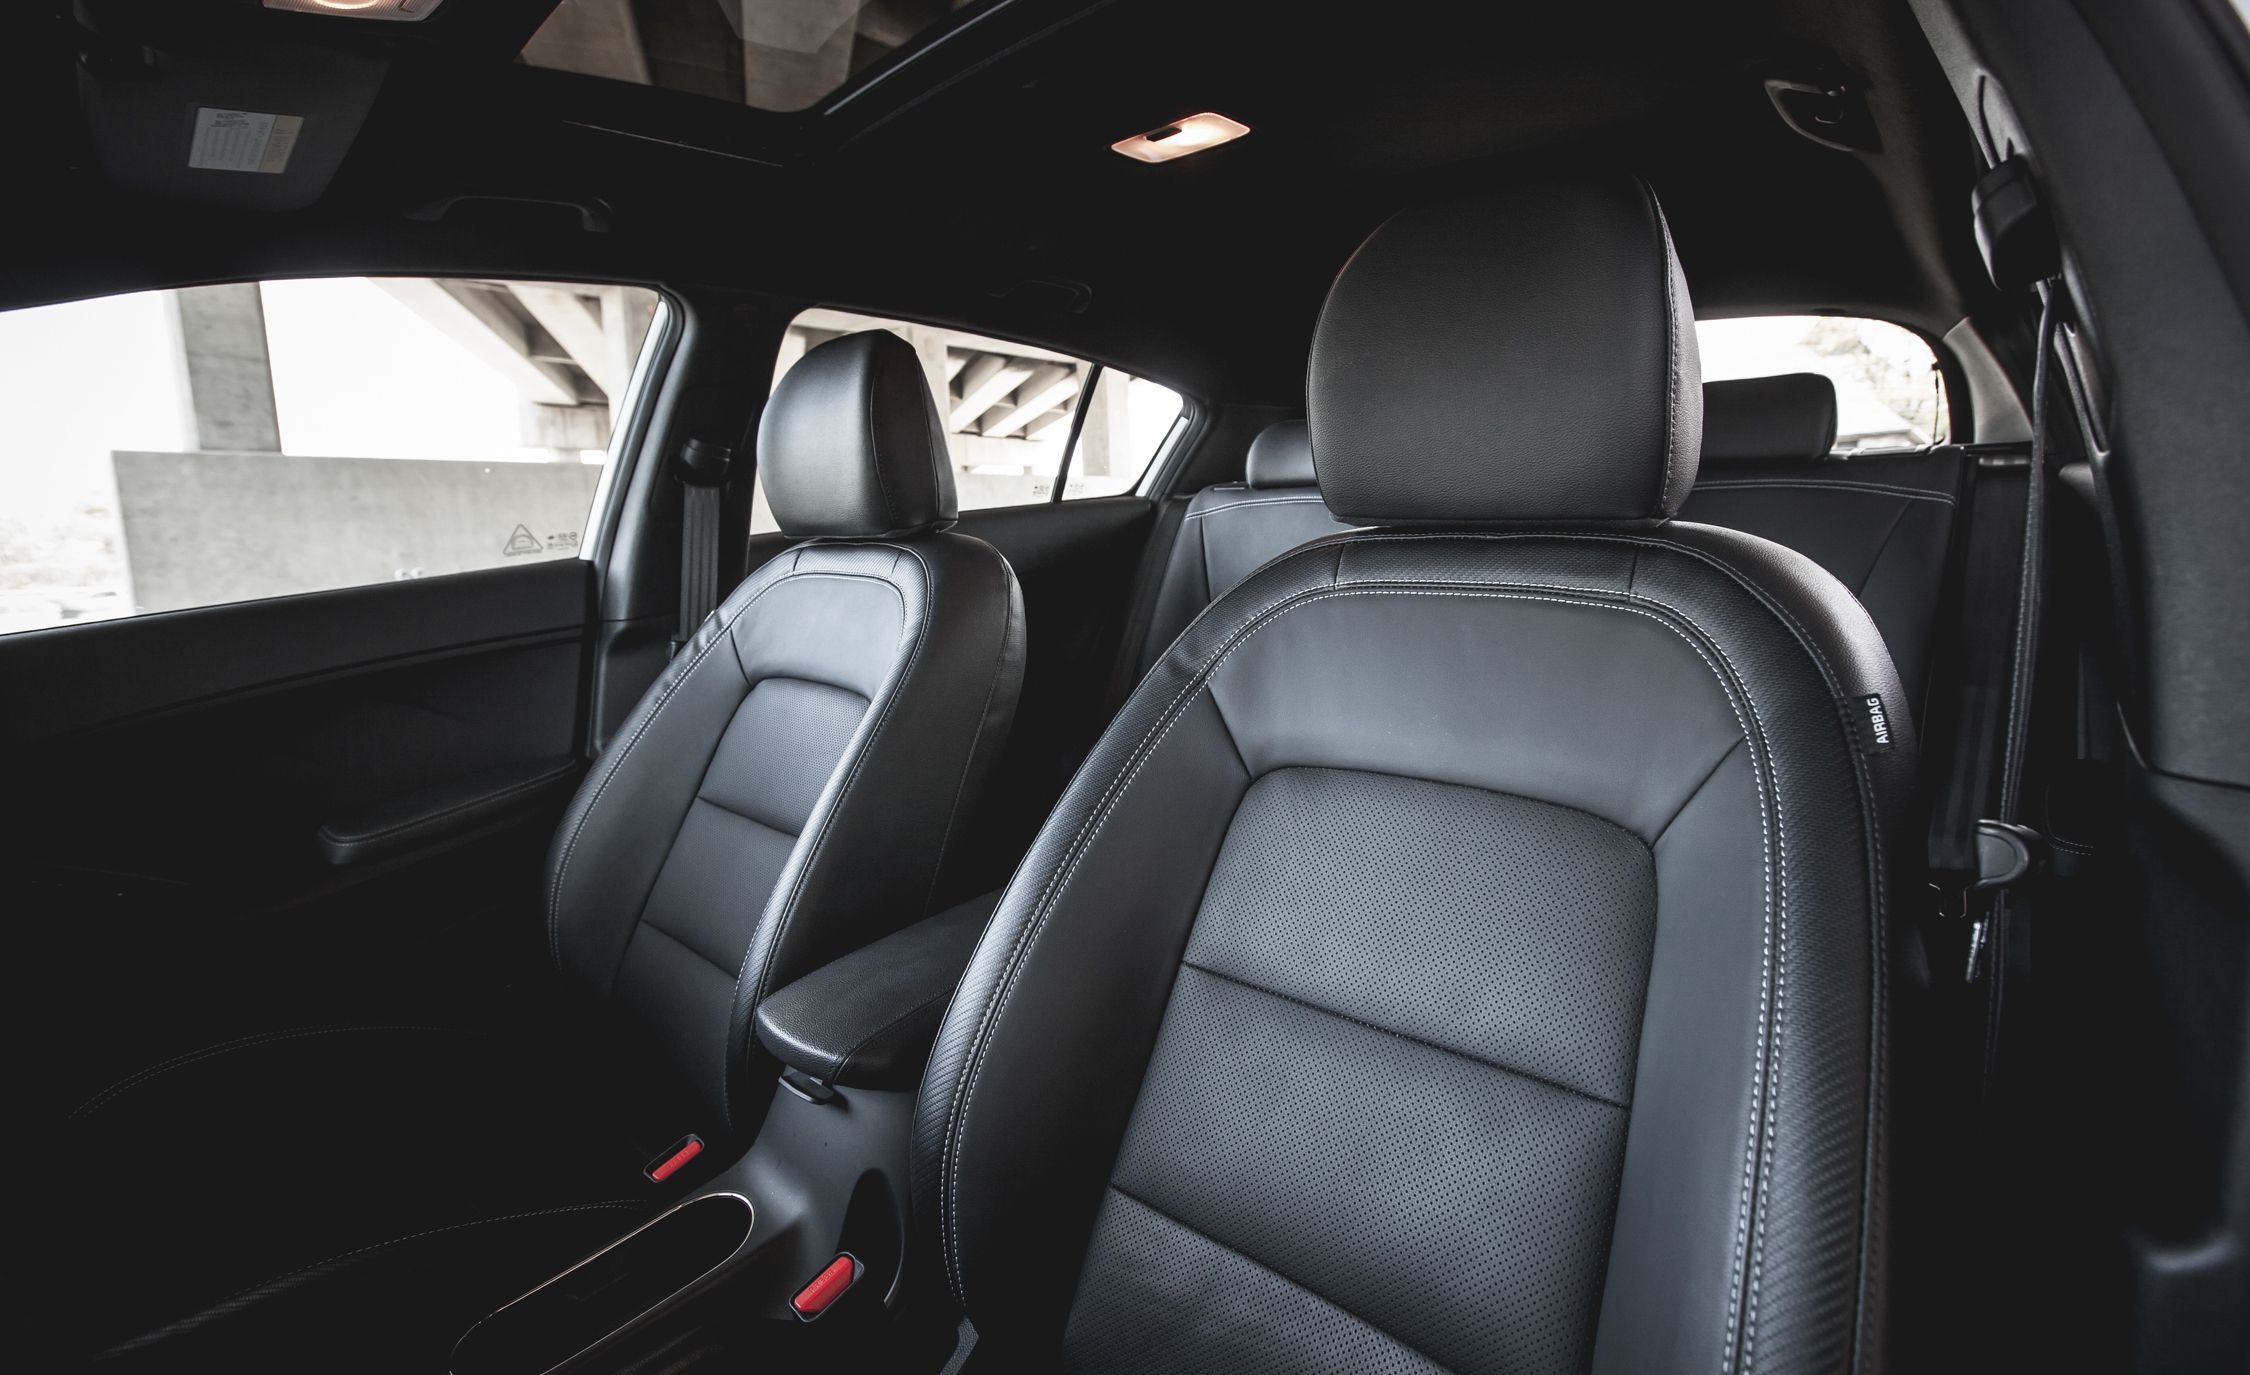 2014 Kia Forte5 SX Turbo Interior (View 10 of 26)